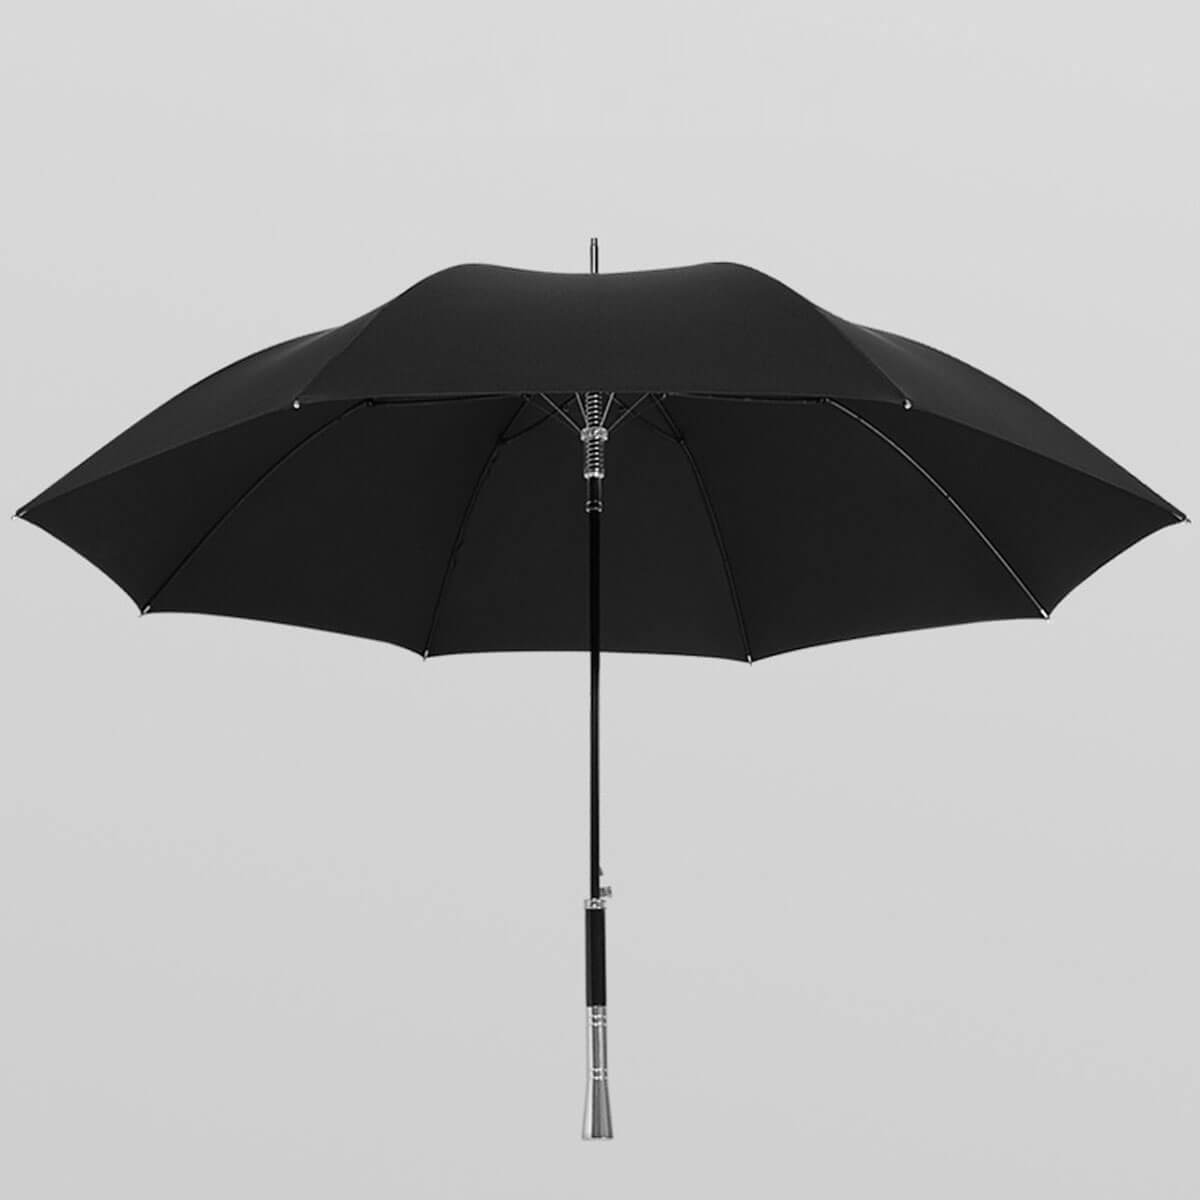 Luxury umbrella for business ladies and gentlemen